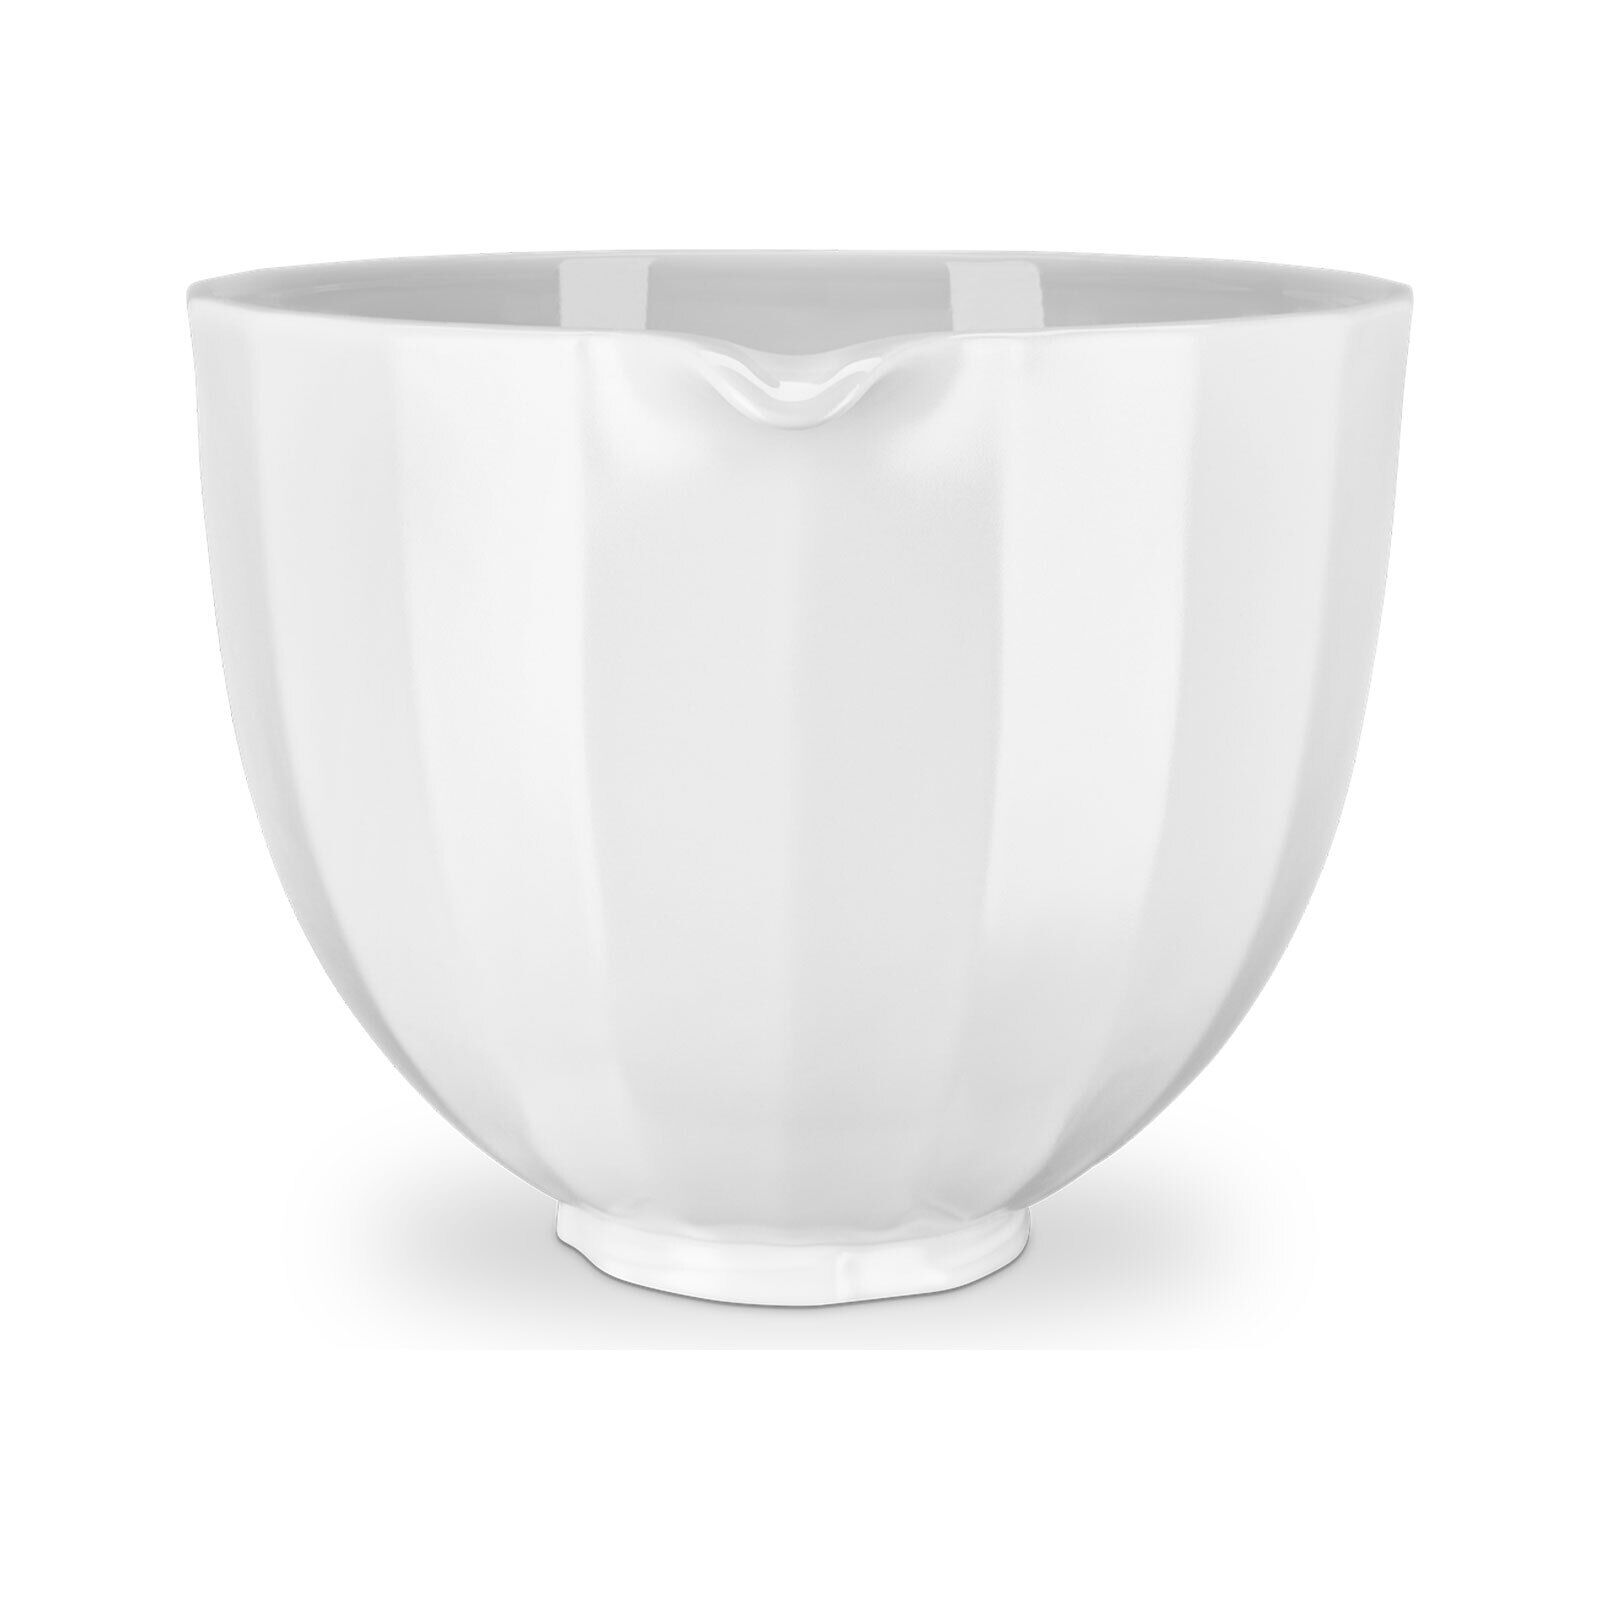 5KSM2CB5PBS - Keramikschüssel 4,7ltr. weiß mit vertikaler Struktur - für Küchenmaschine 4,8L